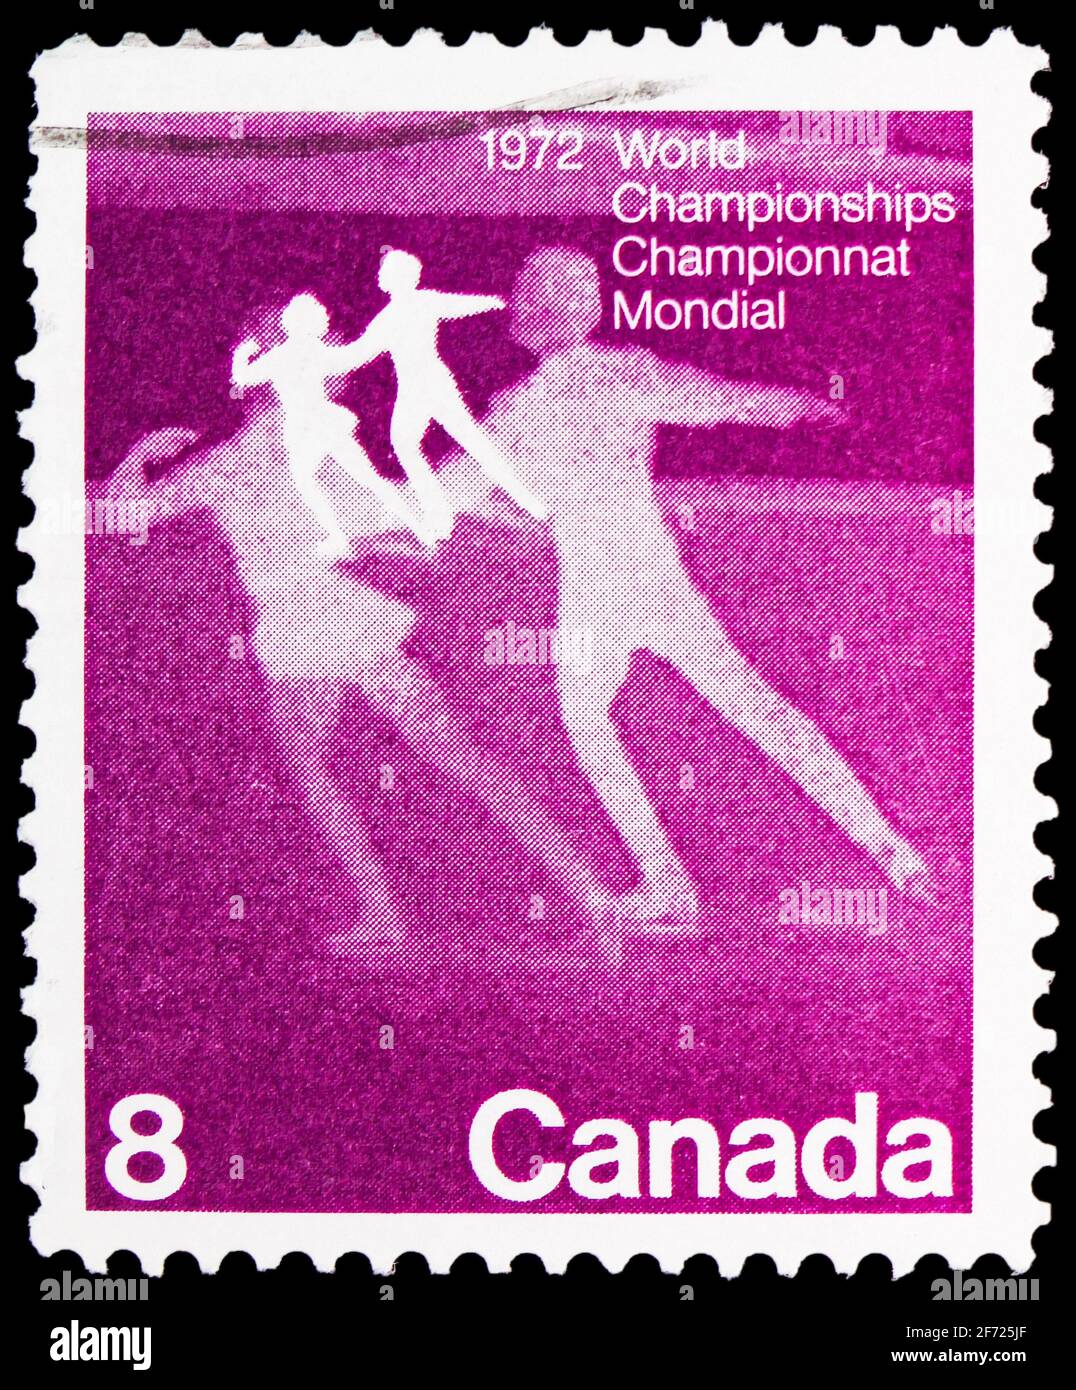 MOSCOU, RUSSIE - le 28 FÉVRIER 2021 : timbre-poste imprimé au Canada montre les Championnats du monde de patinage artistique, série, vers 1972 Banque D'Images